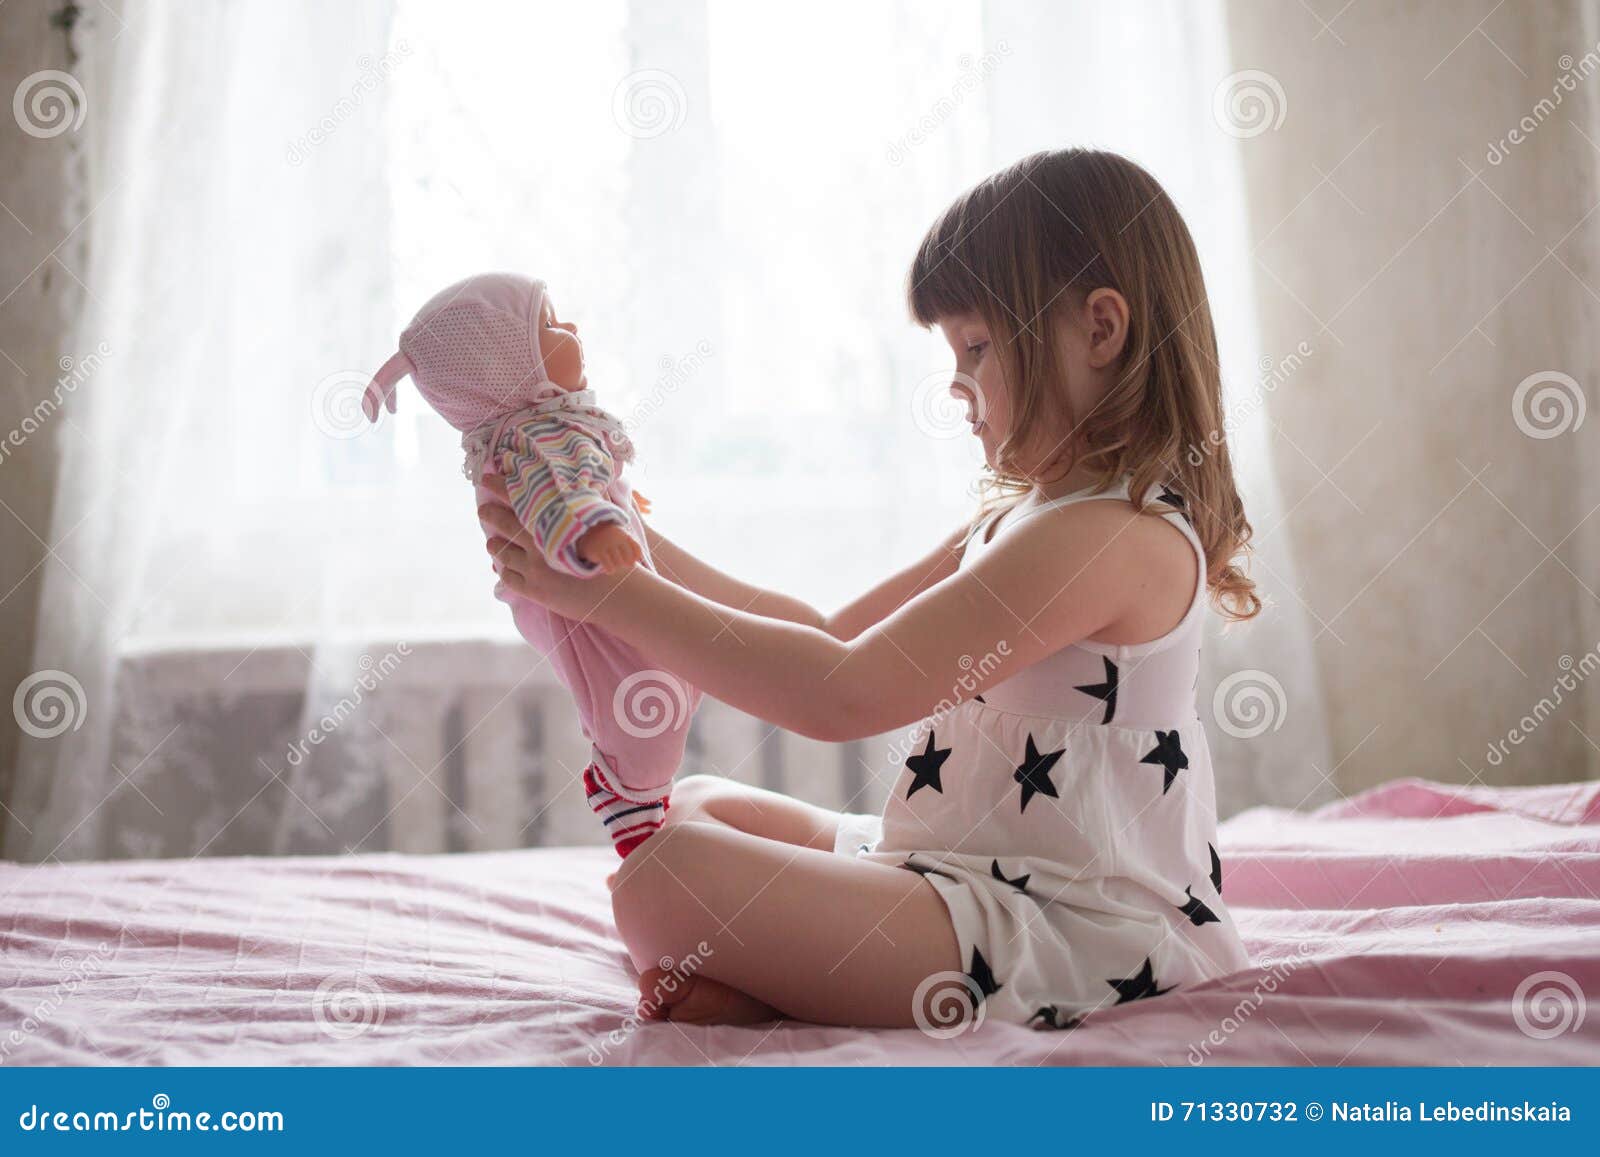 маленькая девочка и ее анал фото 92